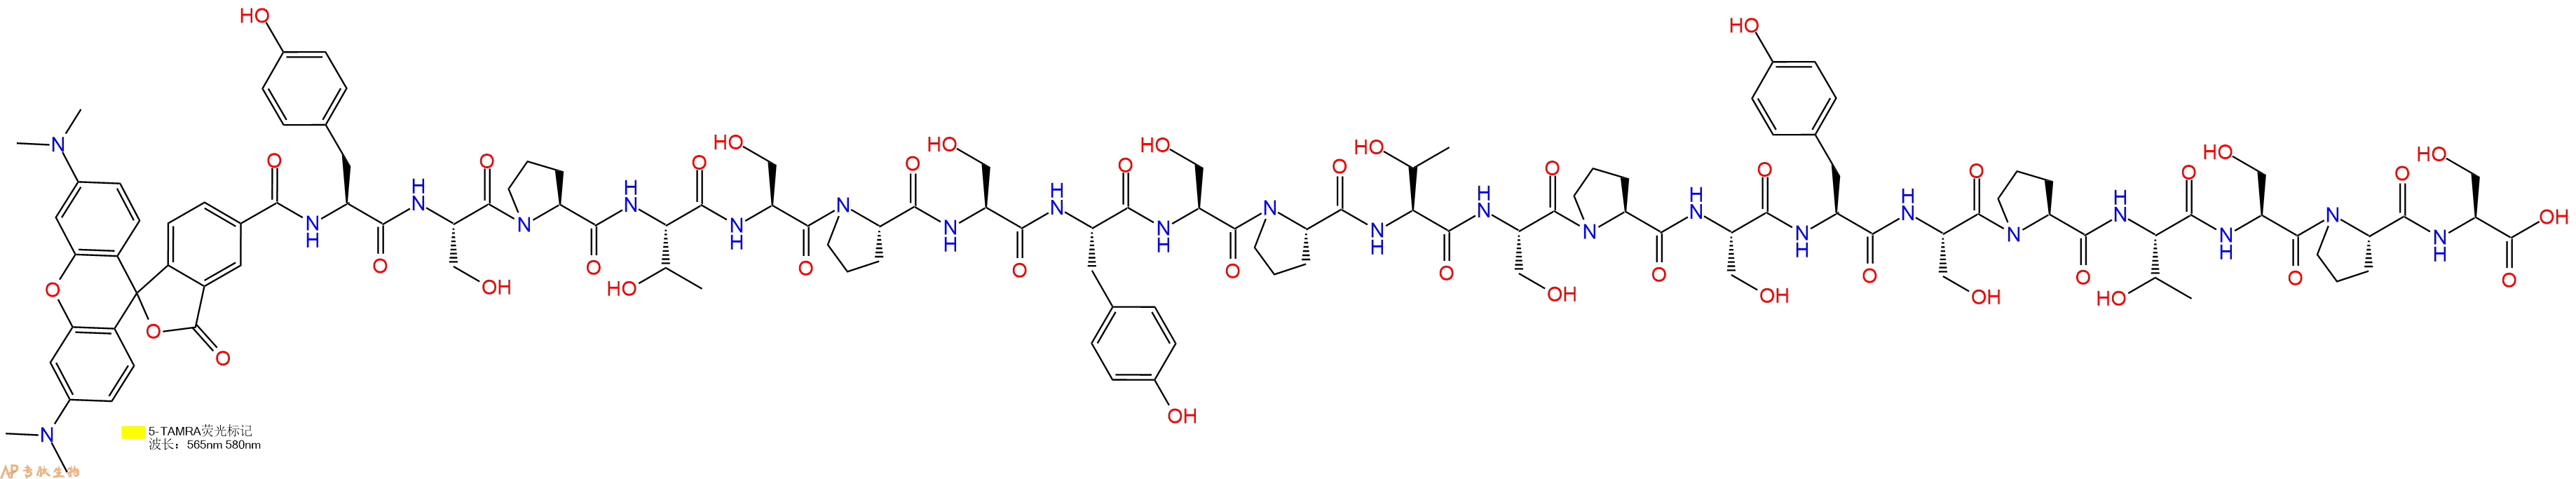 专肽生物产品二十一肽Tamra-YSPTSPSYSPTSPSYSPTSPS